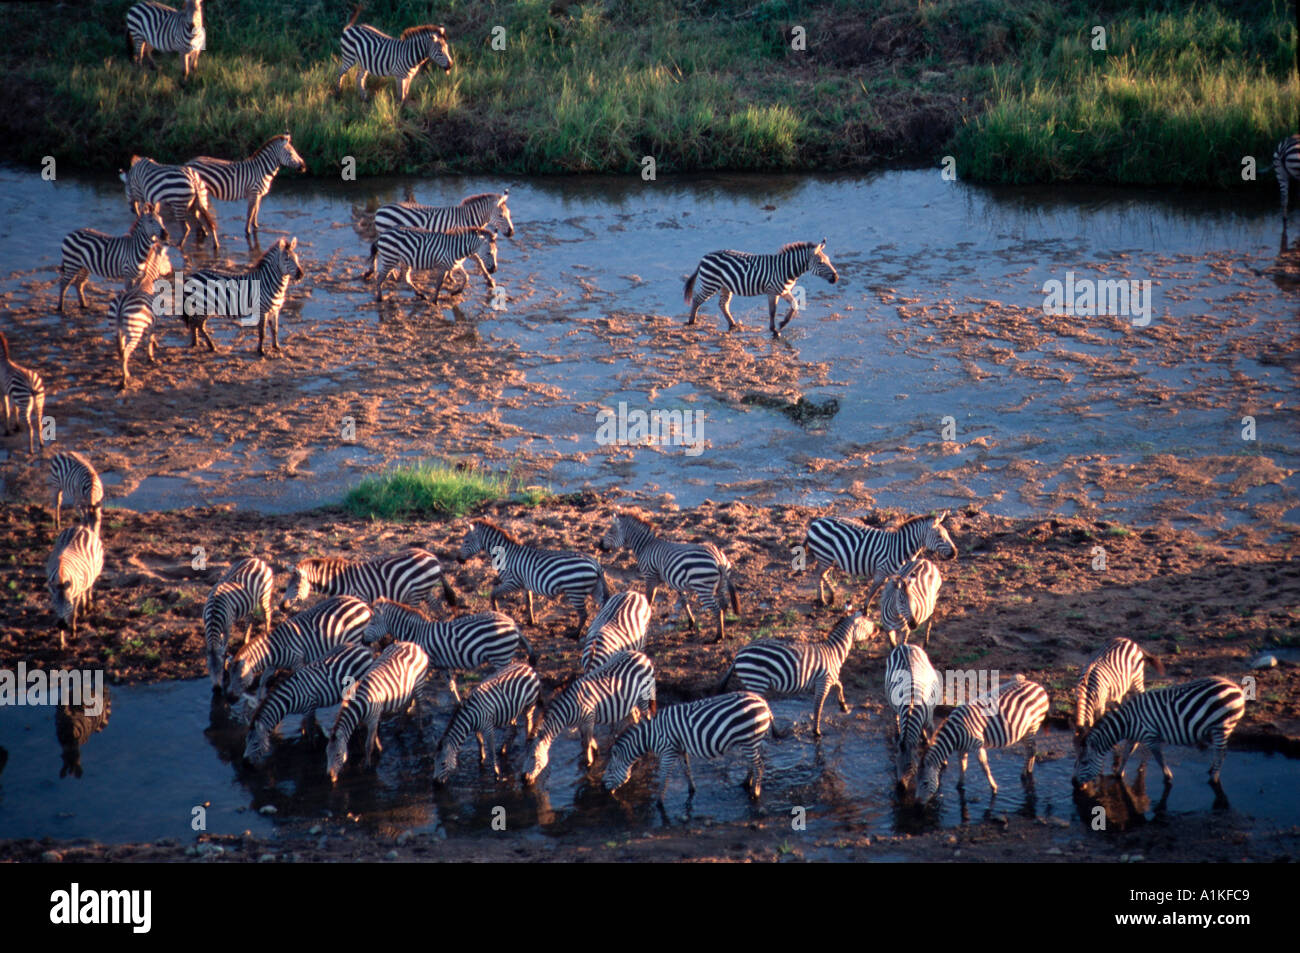 Zebras drinking in river in Africa Stock Photo